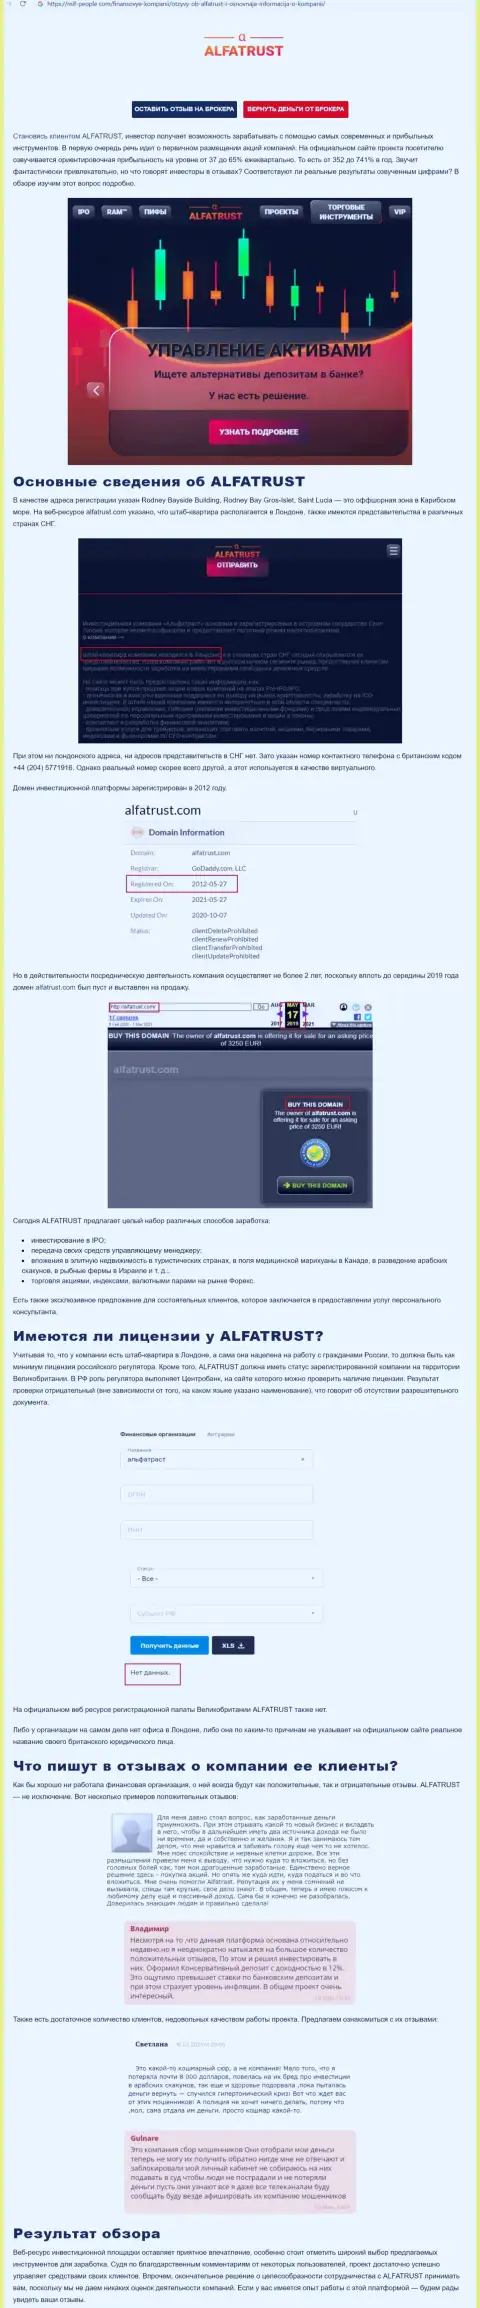 Информационный портал mif people com разместил информацию об форекс дилинговой организации Альфа Траст